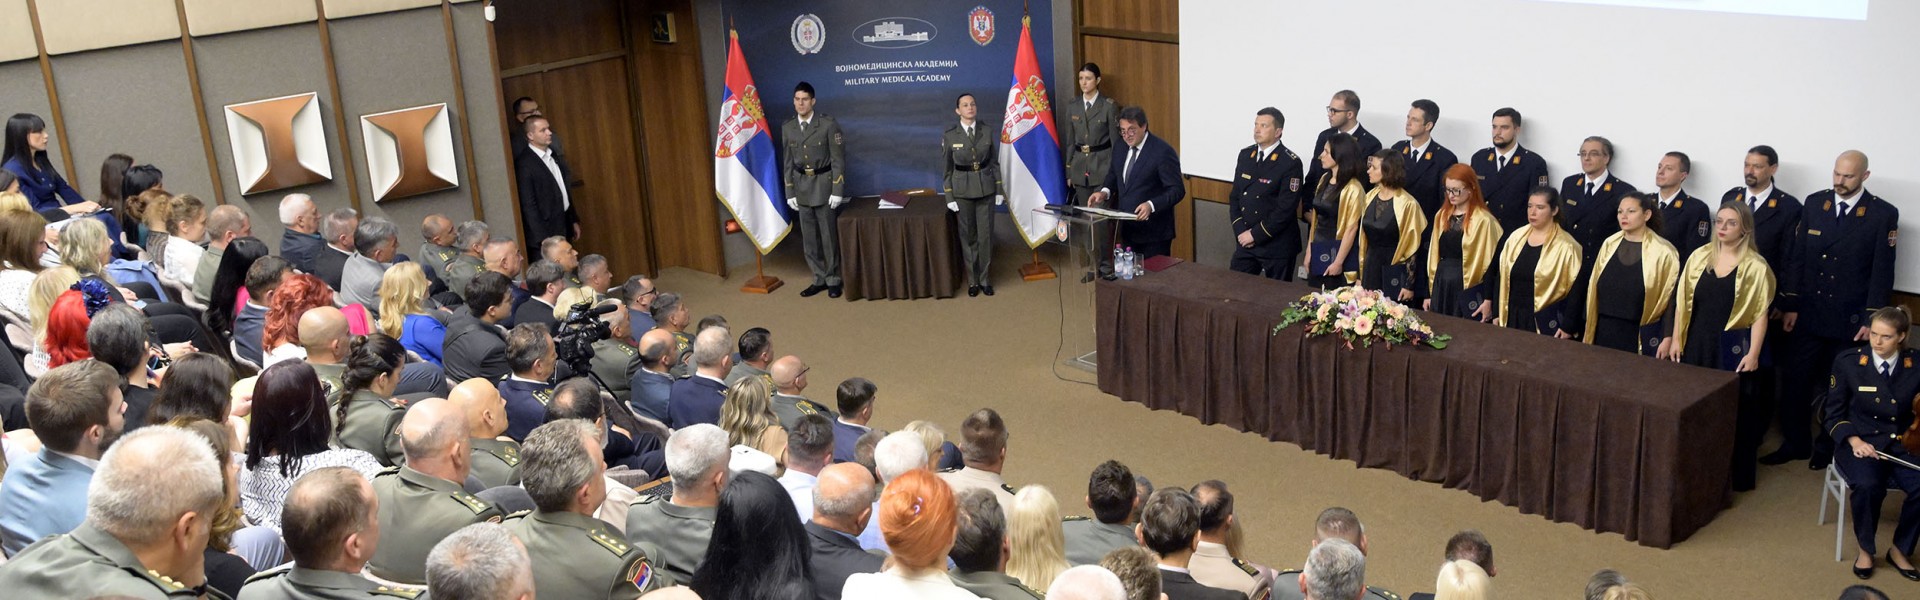 Министар Гашић присуствовао обележавању јубилеја 15 година Медицинског факултета ВМА 